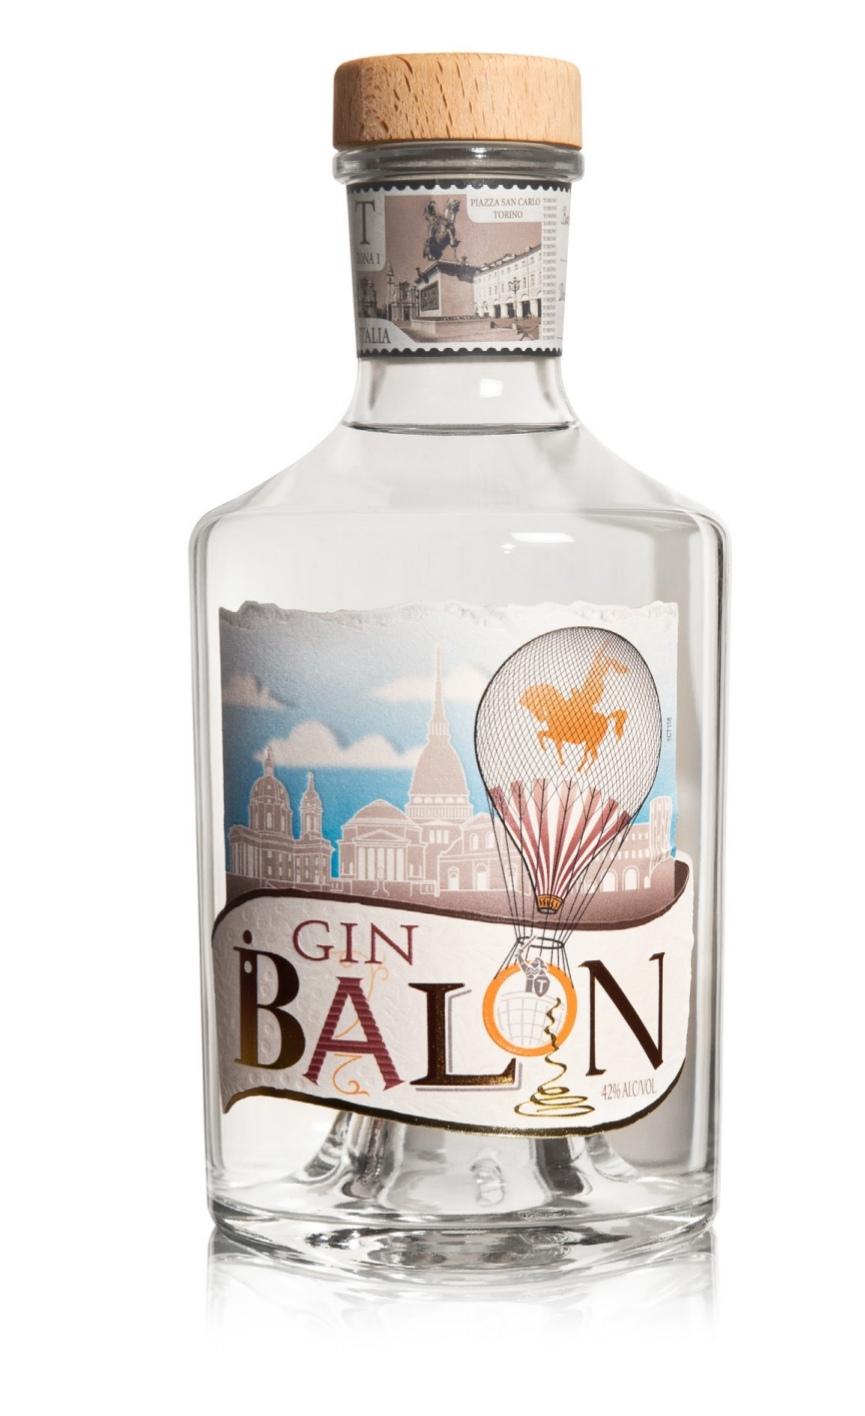 Gin Mini Gin Balon 42% vol 700 ml